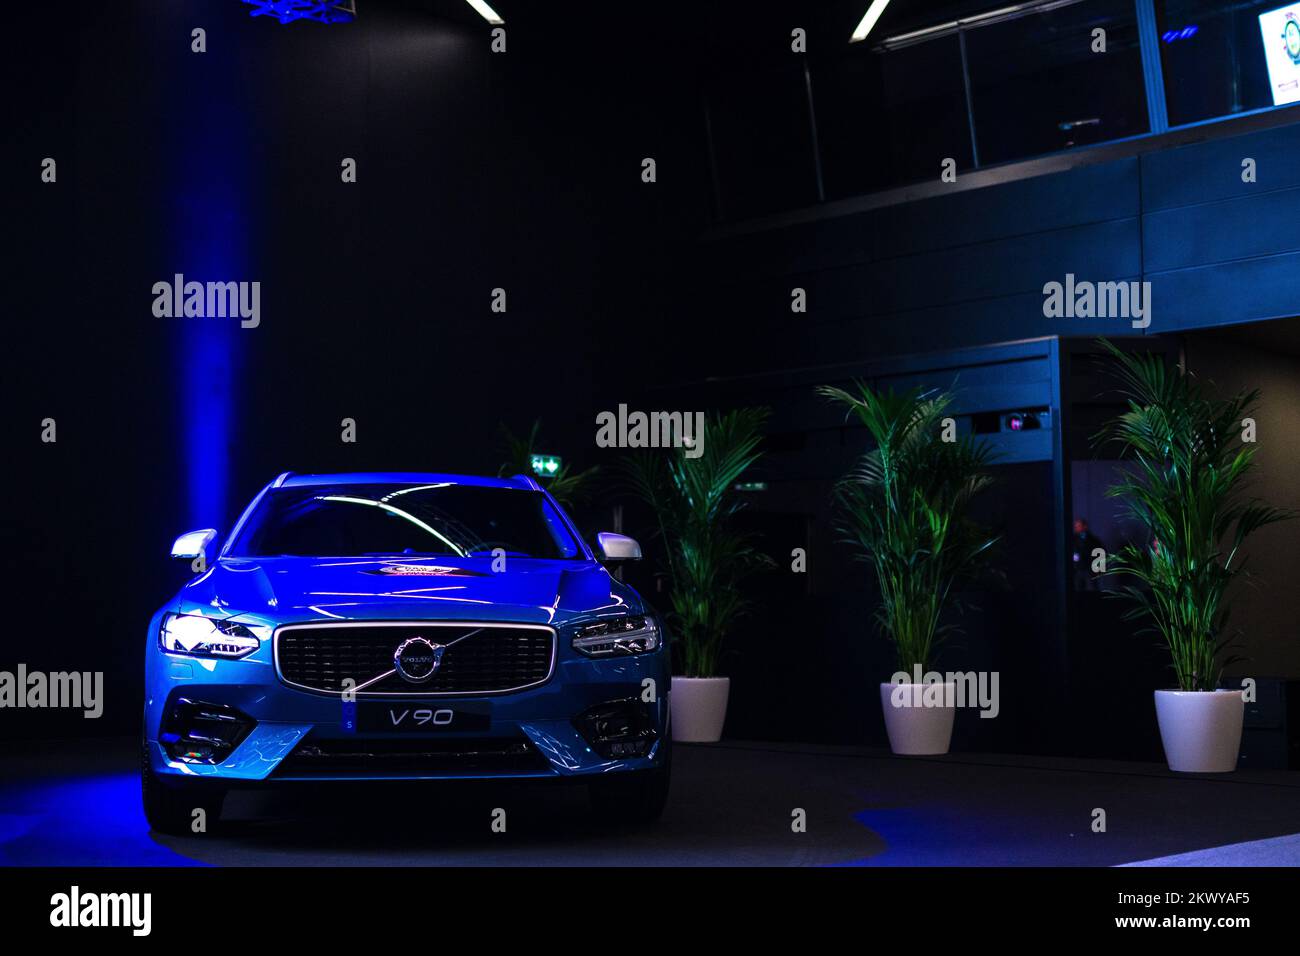 06.03.2017, Genf, Schweiz – der Volvo S90 oder V90 war einer der Finalisten der Auszeichnung „Car of the Year 2017“ und gewann den vierten (4.) Platz. Foto: SASO Domijan/HaloPix/PIXSELL Stockfoto